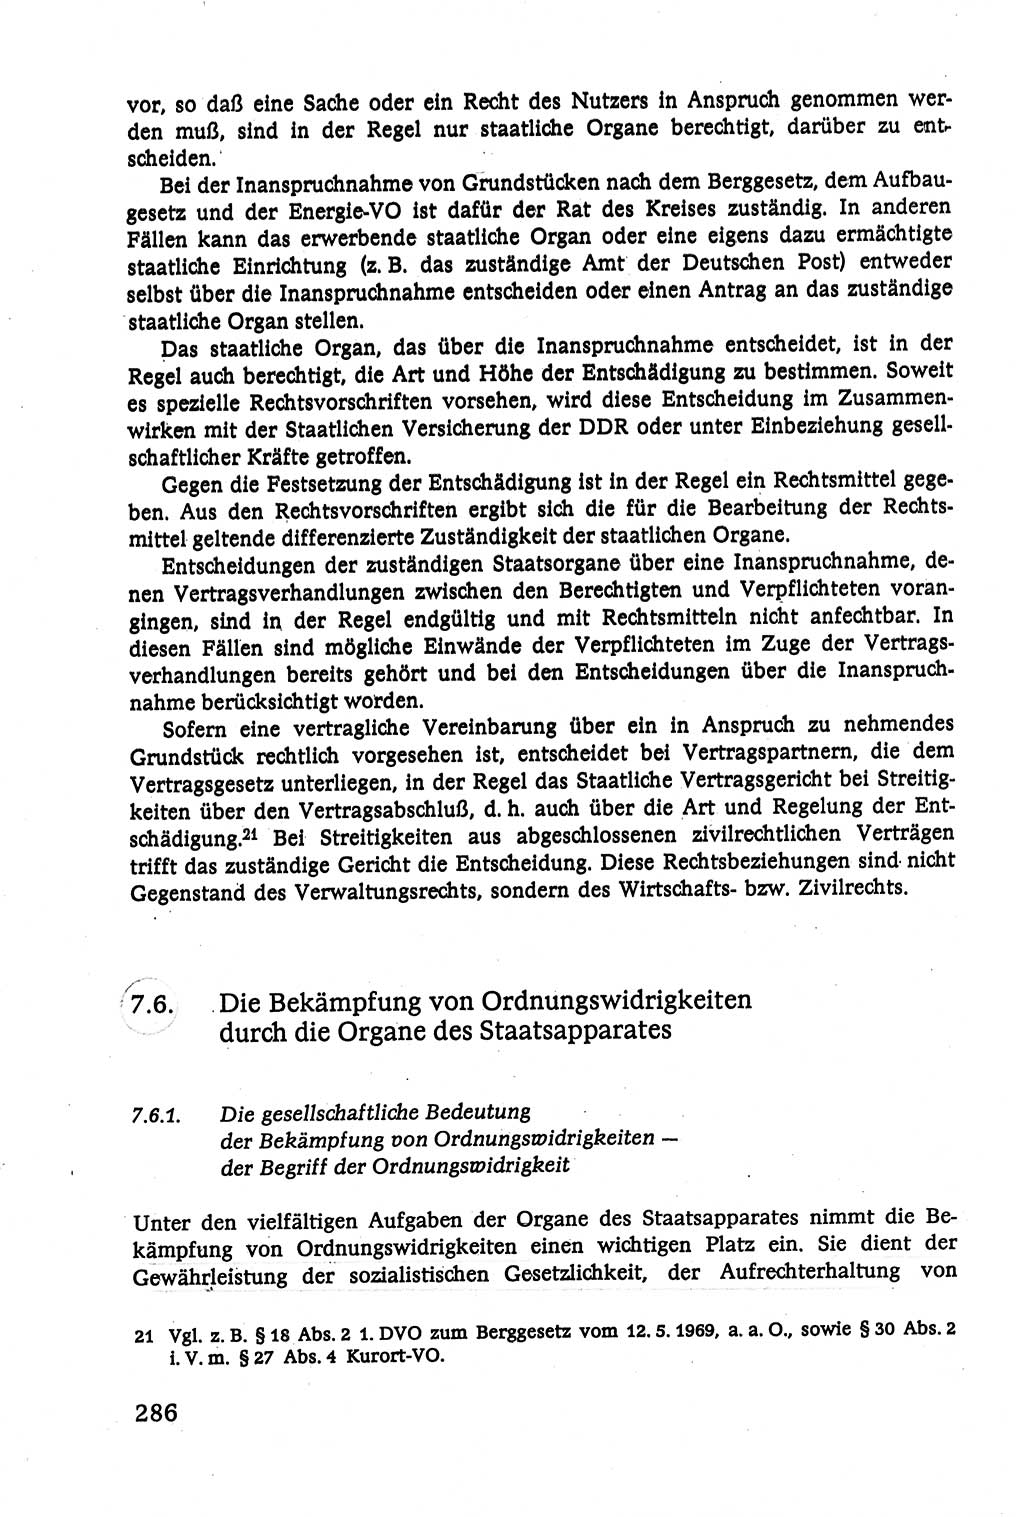 Verwaltungsrecht [Deutsche Demokratische Republik (DDR)], Lehrbuch 1979, Seite 286 (Verw.-R. DDR Lb. 1979, S. 286)